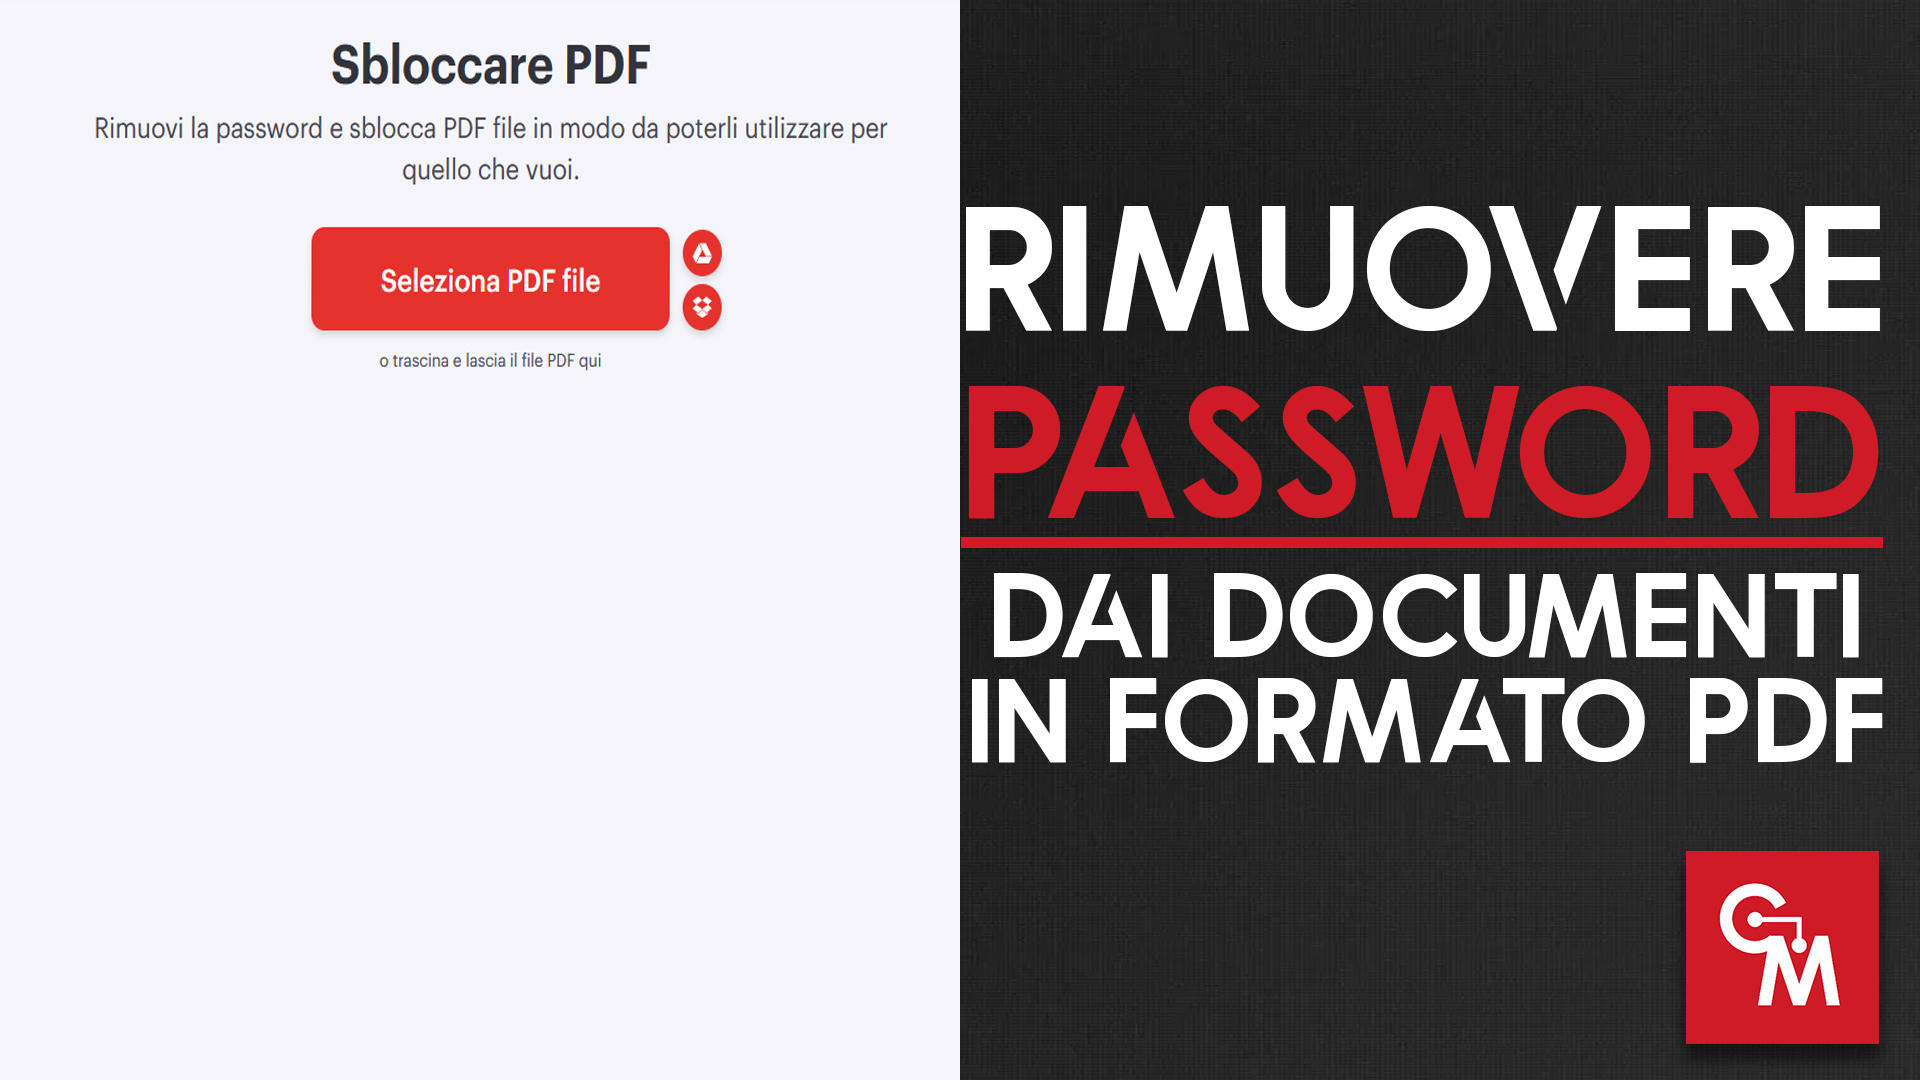 Come rimuovere una password dimenticata dai documenti in PDF